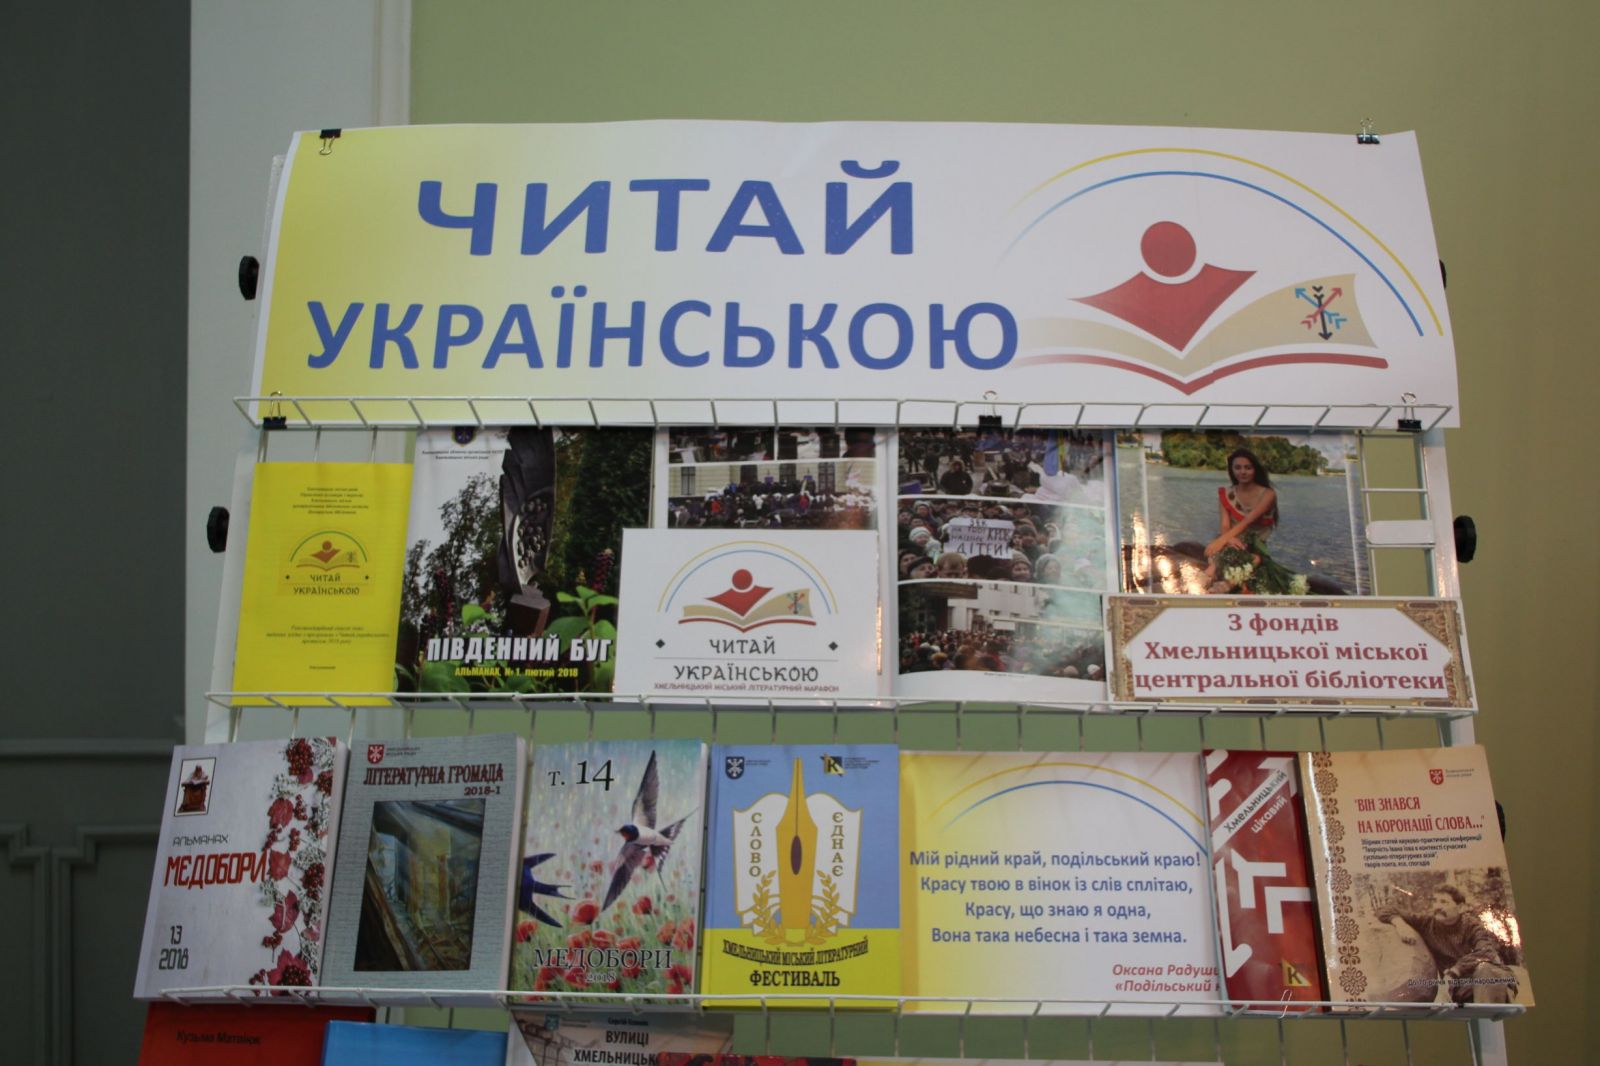 «Читай українською» - програма, яка підтримує місцевих авторів та українську книгу